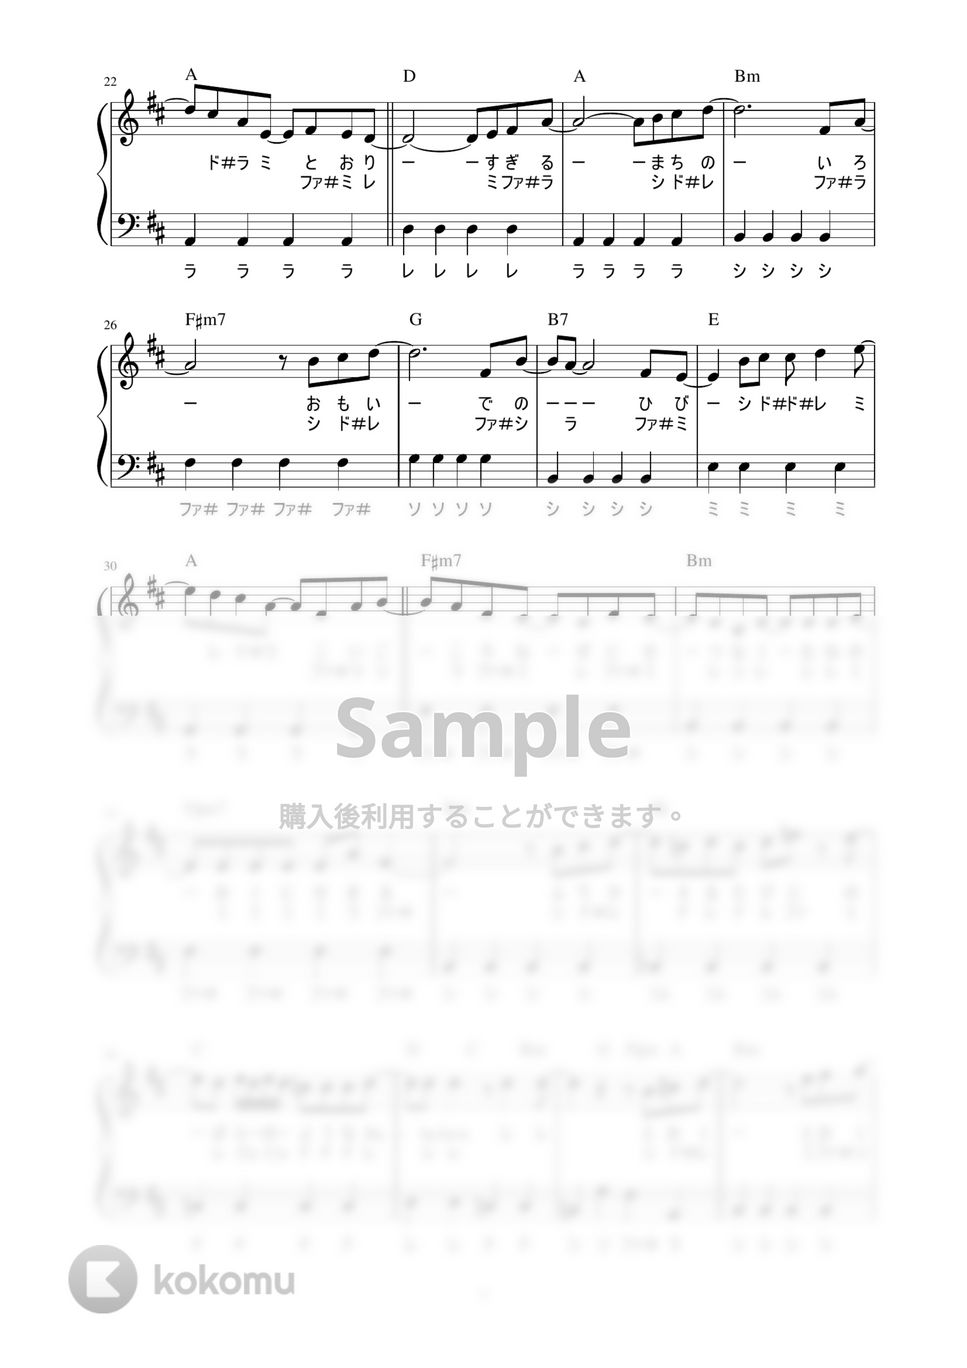 サザンオールスターズ - 希望の轍 (かんたん / 歌詞付き / ドレミ付き / 初心者) by piano.tokyo